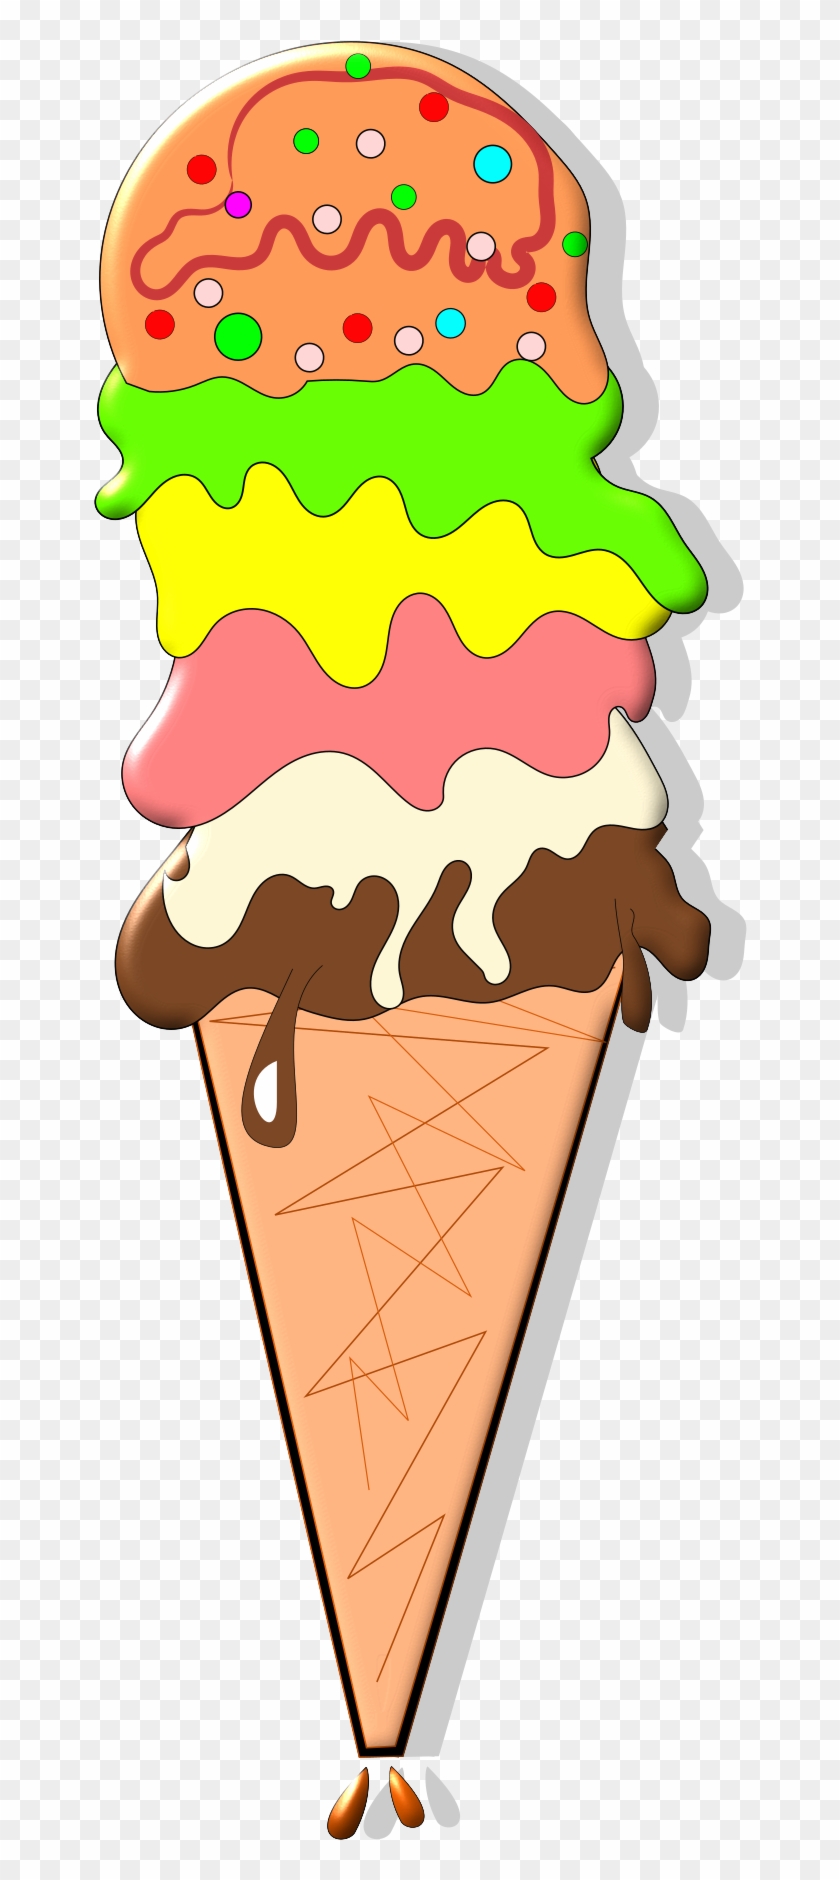 Ice Cream Cones Chocolate Ice Cream Strawberry Ice - Ice Cream Cones Chocolate Ice Cream Strawberry Ice #498377